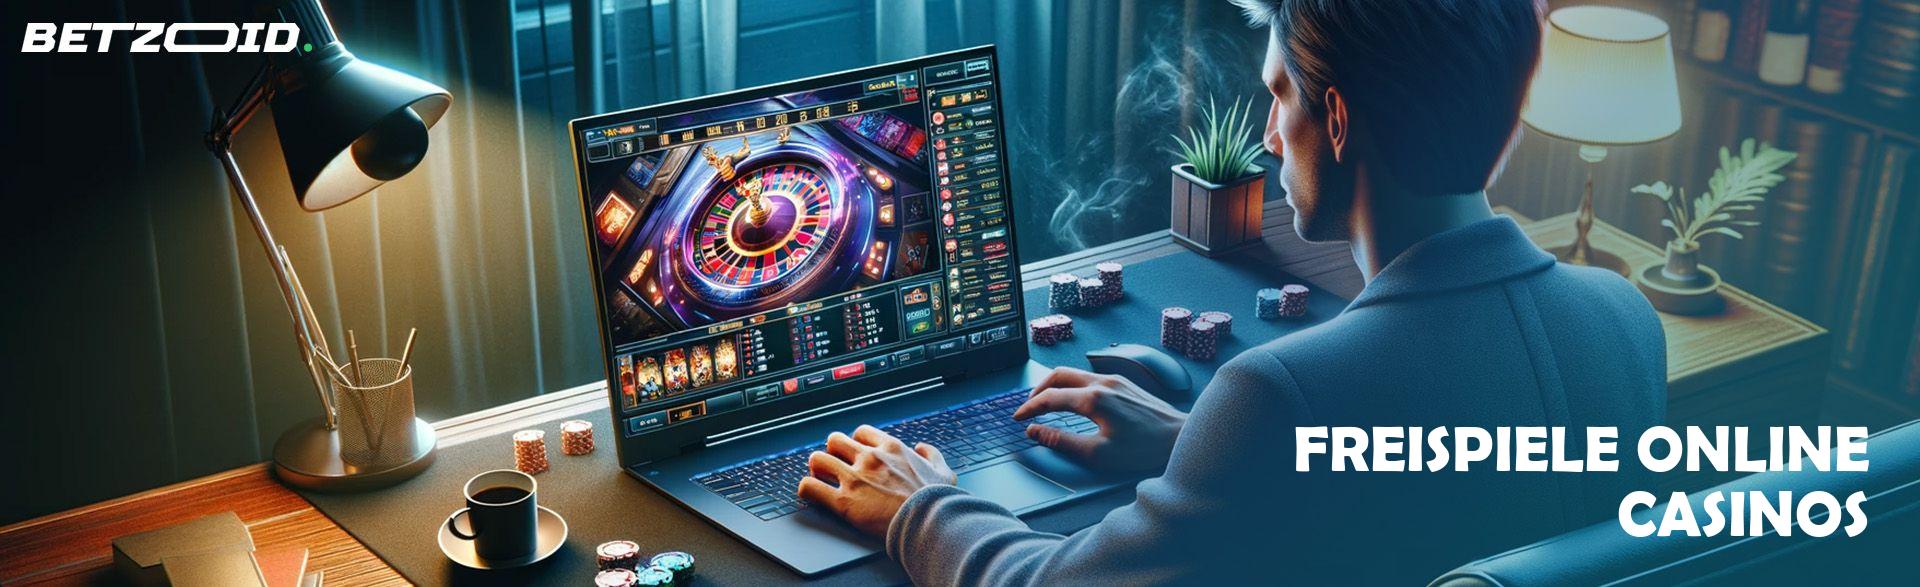 Freispiele Online Casinos.